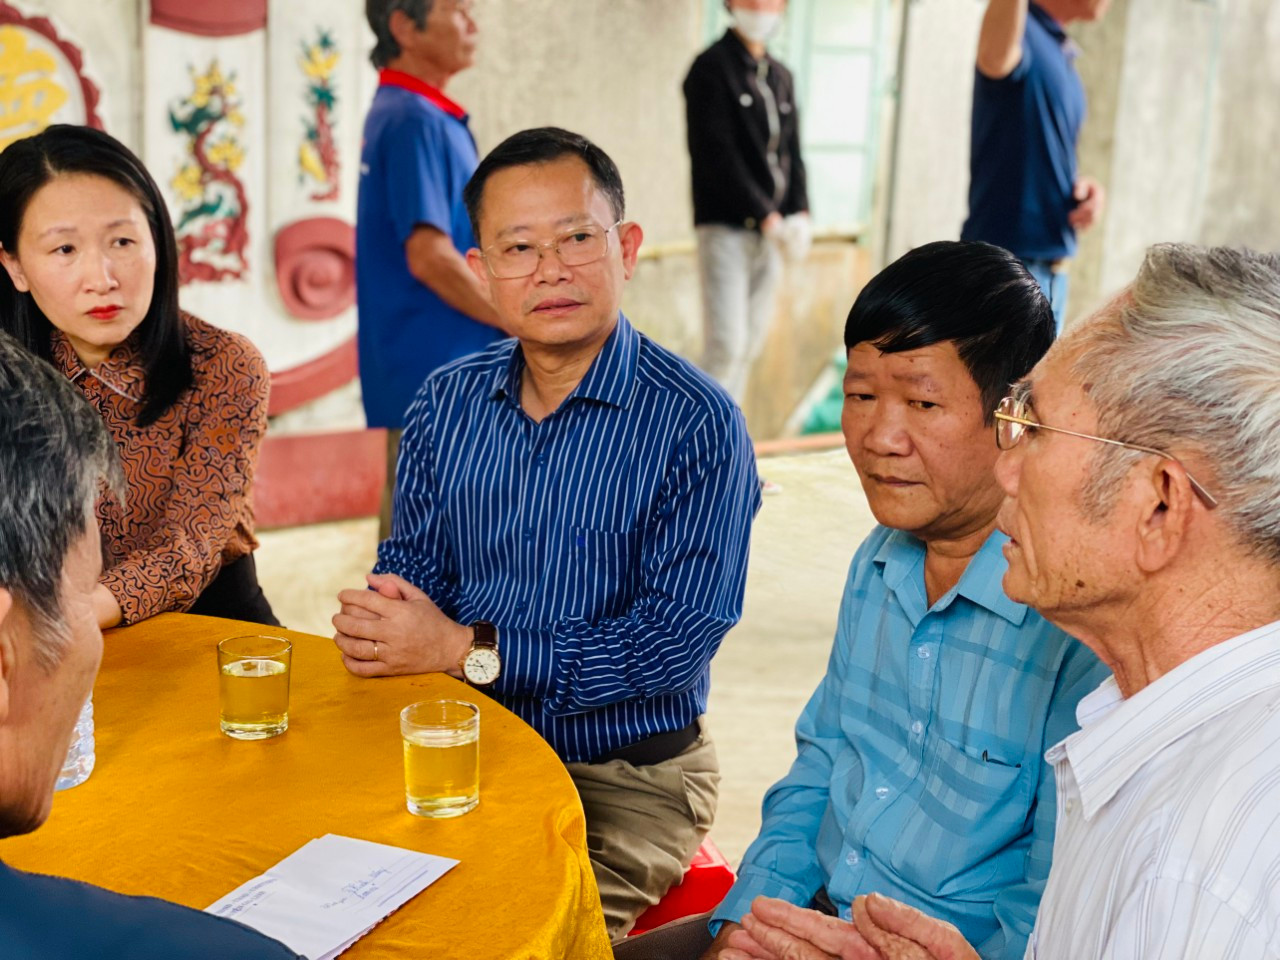 Ủy ban MTTQ Việt Nam huyện Gio Linh tổ chức thăm hỏi, động viên người thân của 2 vợ chồng gặp nạn trong lúc đi đánh cá trên sông Thạch Hãn.